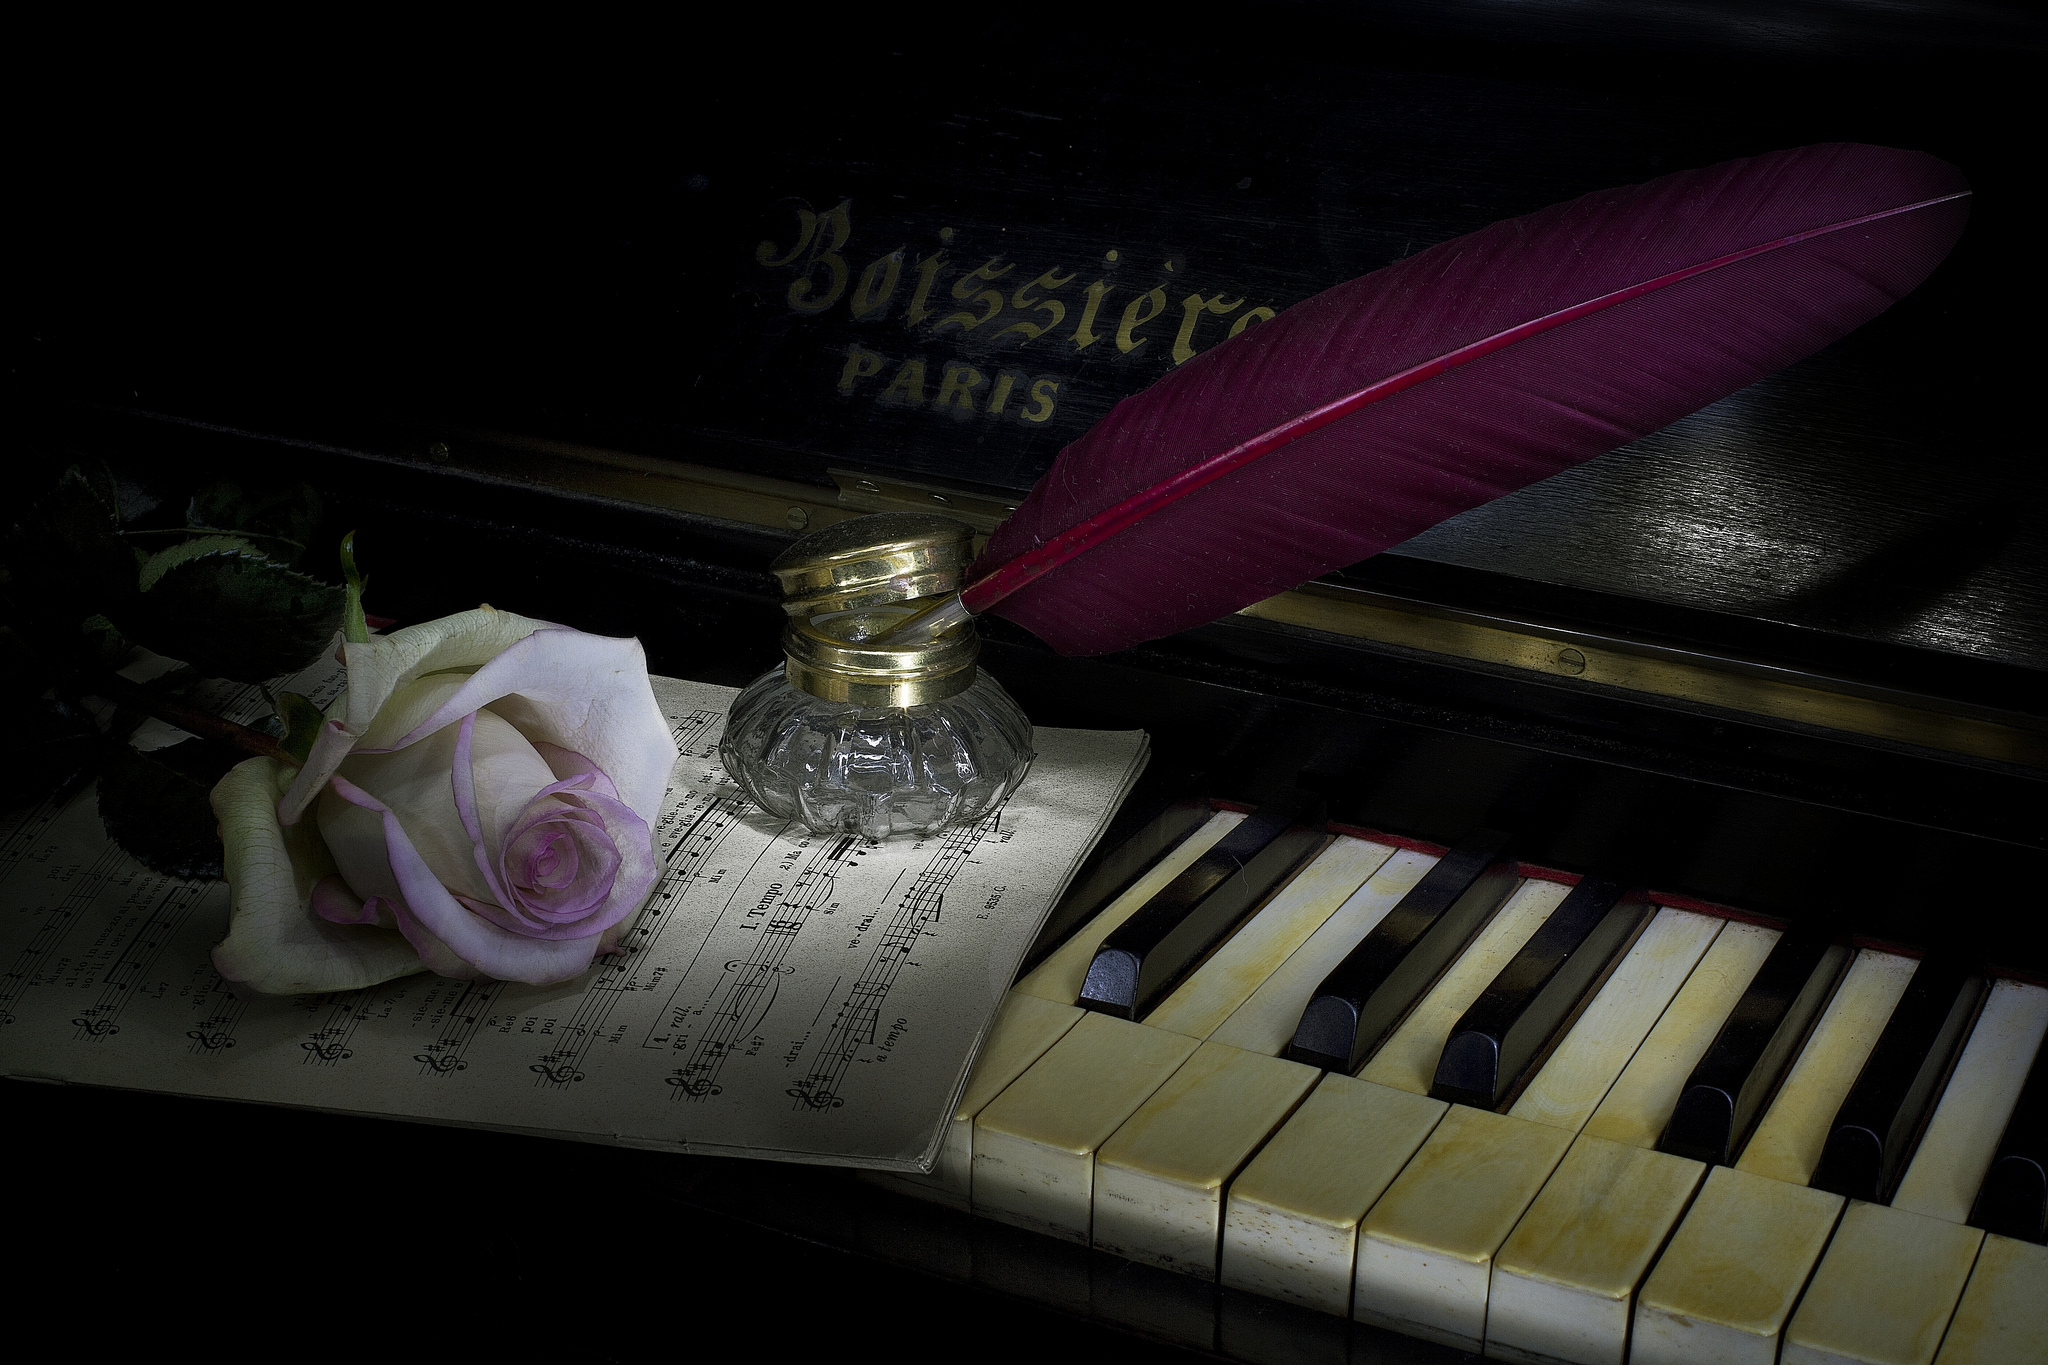 Лист романсы. Цветы на рояле. Цветы на пианино. Литературно-музыкальный вечер. Пианино с цветами.